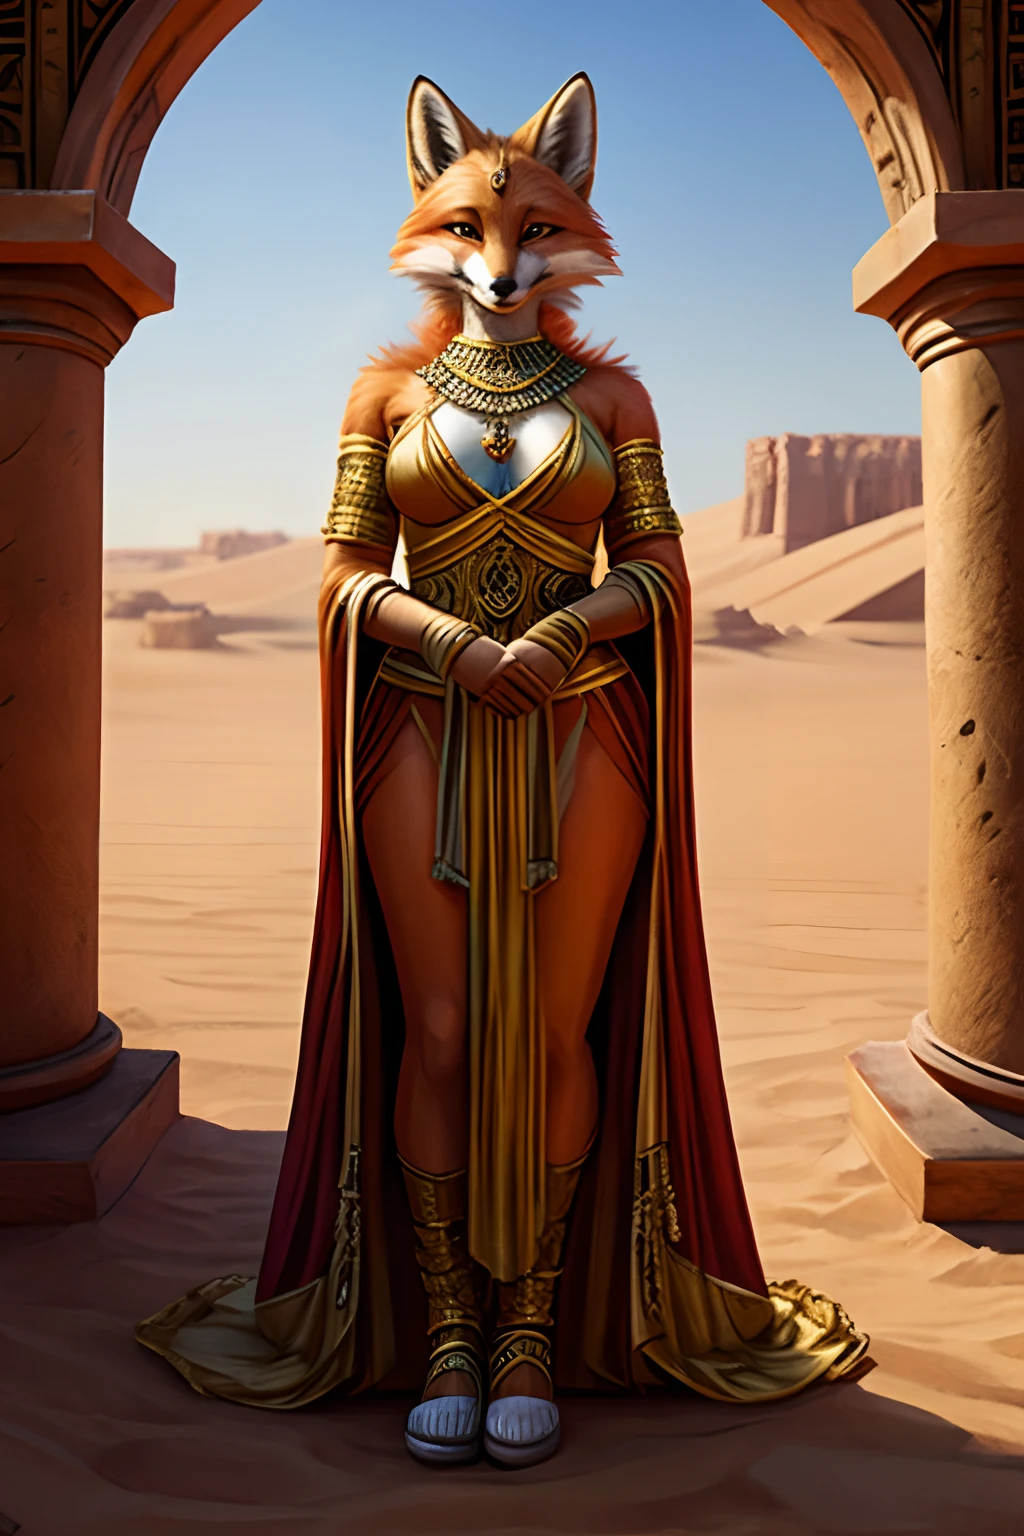 reine renard sage avec un esprit déviant portant des vêtements royaux révélateurs qui conviendraient à un royaume dans un désert